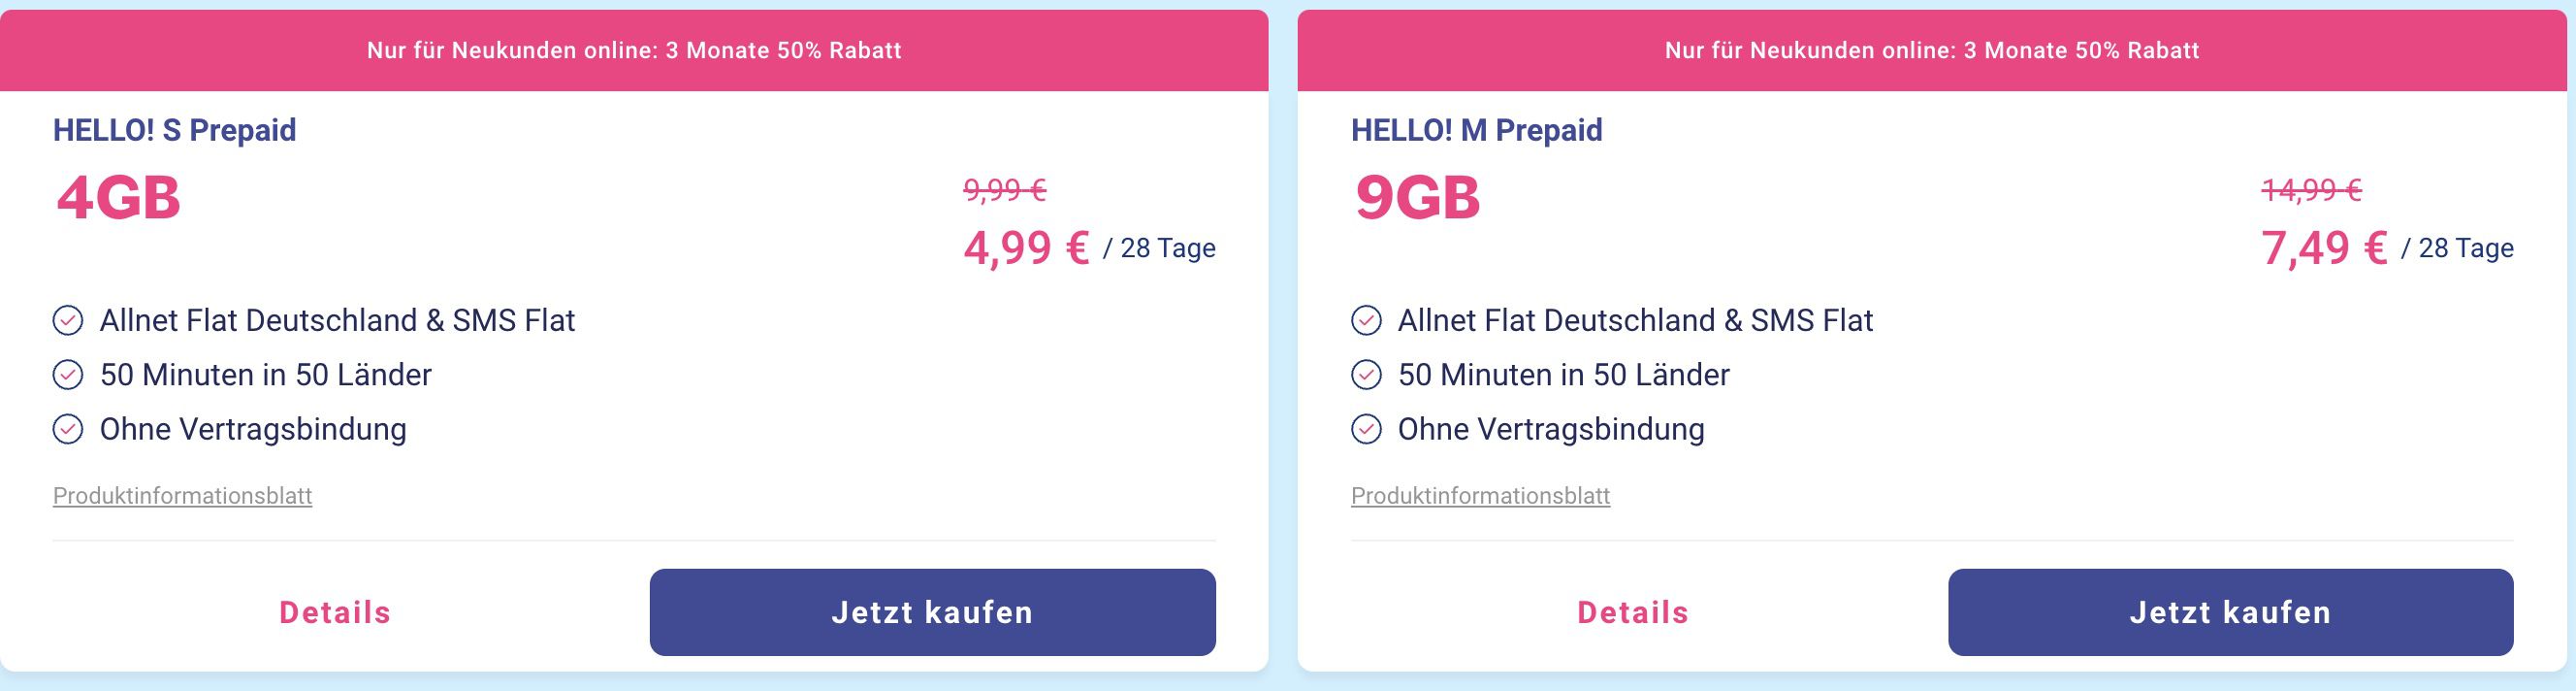 50% Rabatt auf Lebara Prepaid Tarife im o2 Netz   z.B. Allnet Flat mit 9GB LTE 7,49€ mtl.